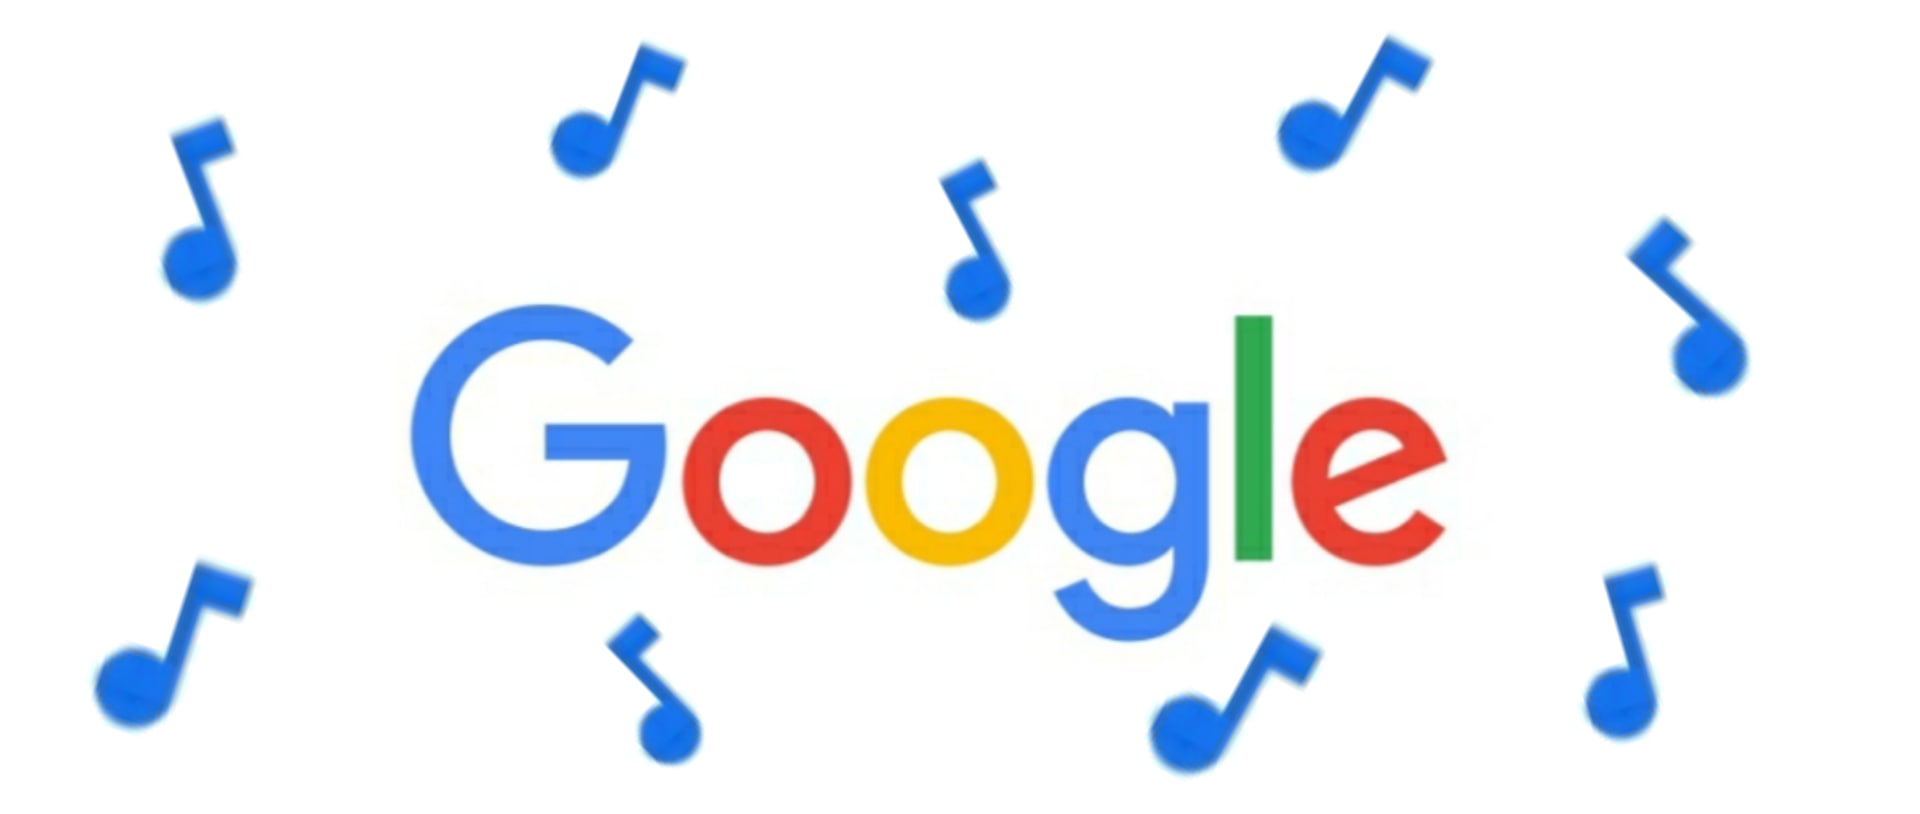 Membuat Suara Google Tanpa Aplikasi